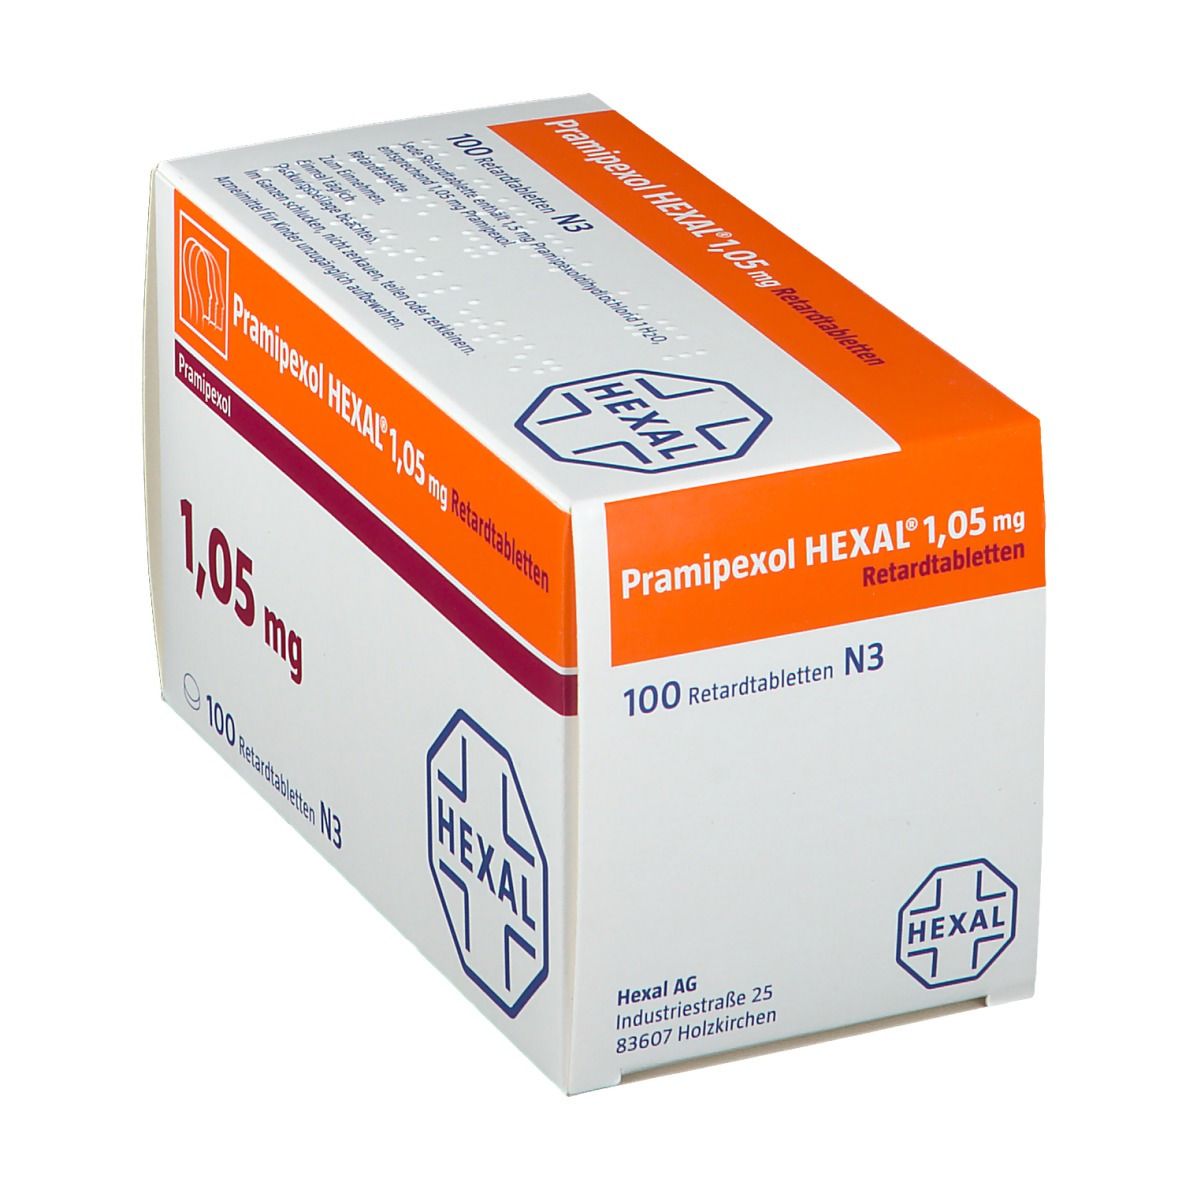 Pramipexol HEXAL® 1,05 mg